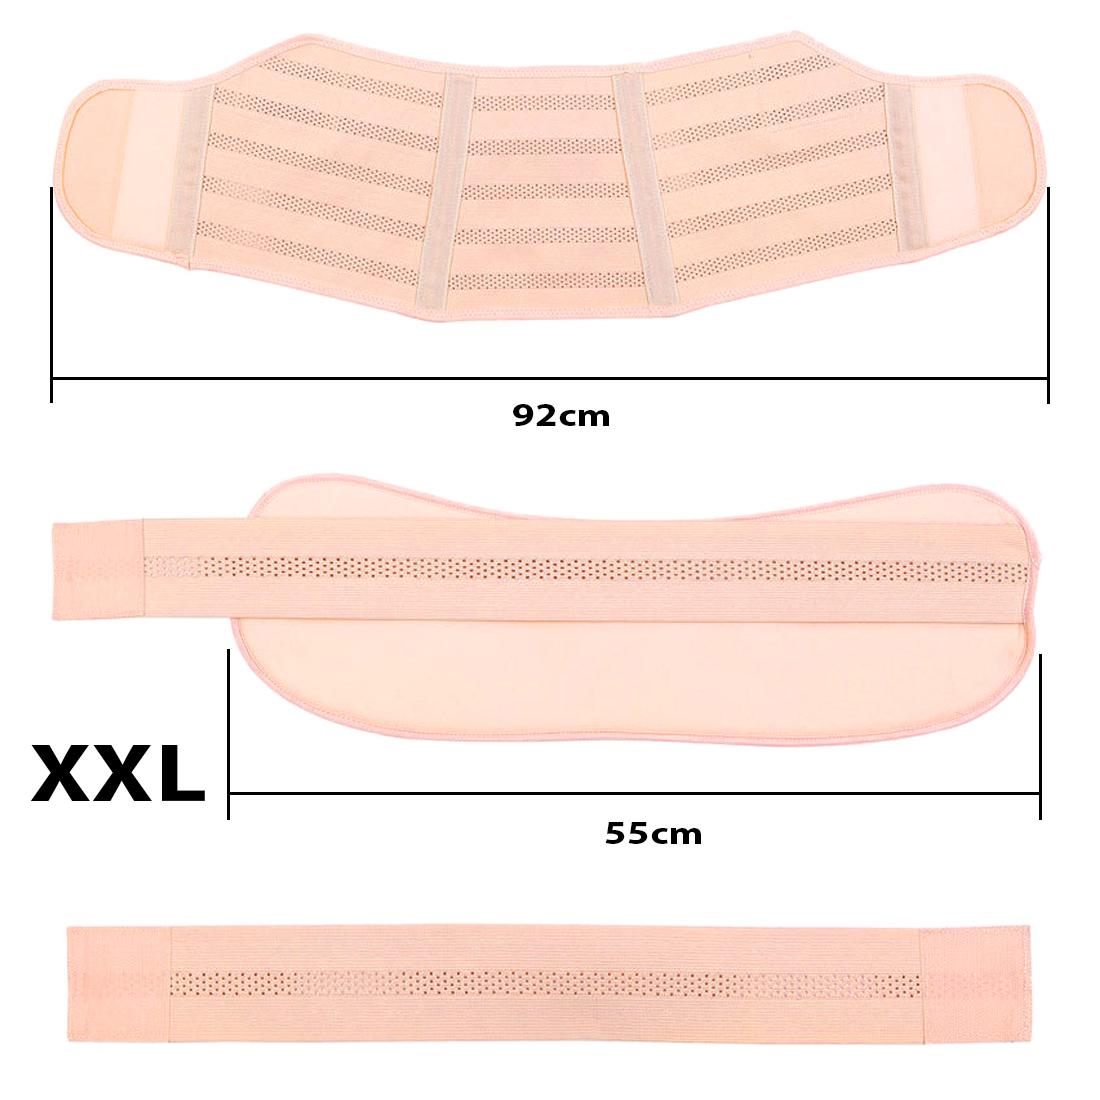 Бандаж для беременных XXL эластичный пояс на липучках UFT Bandage